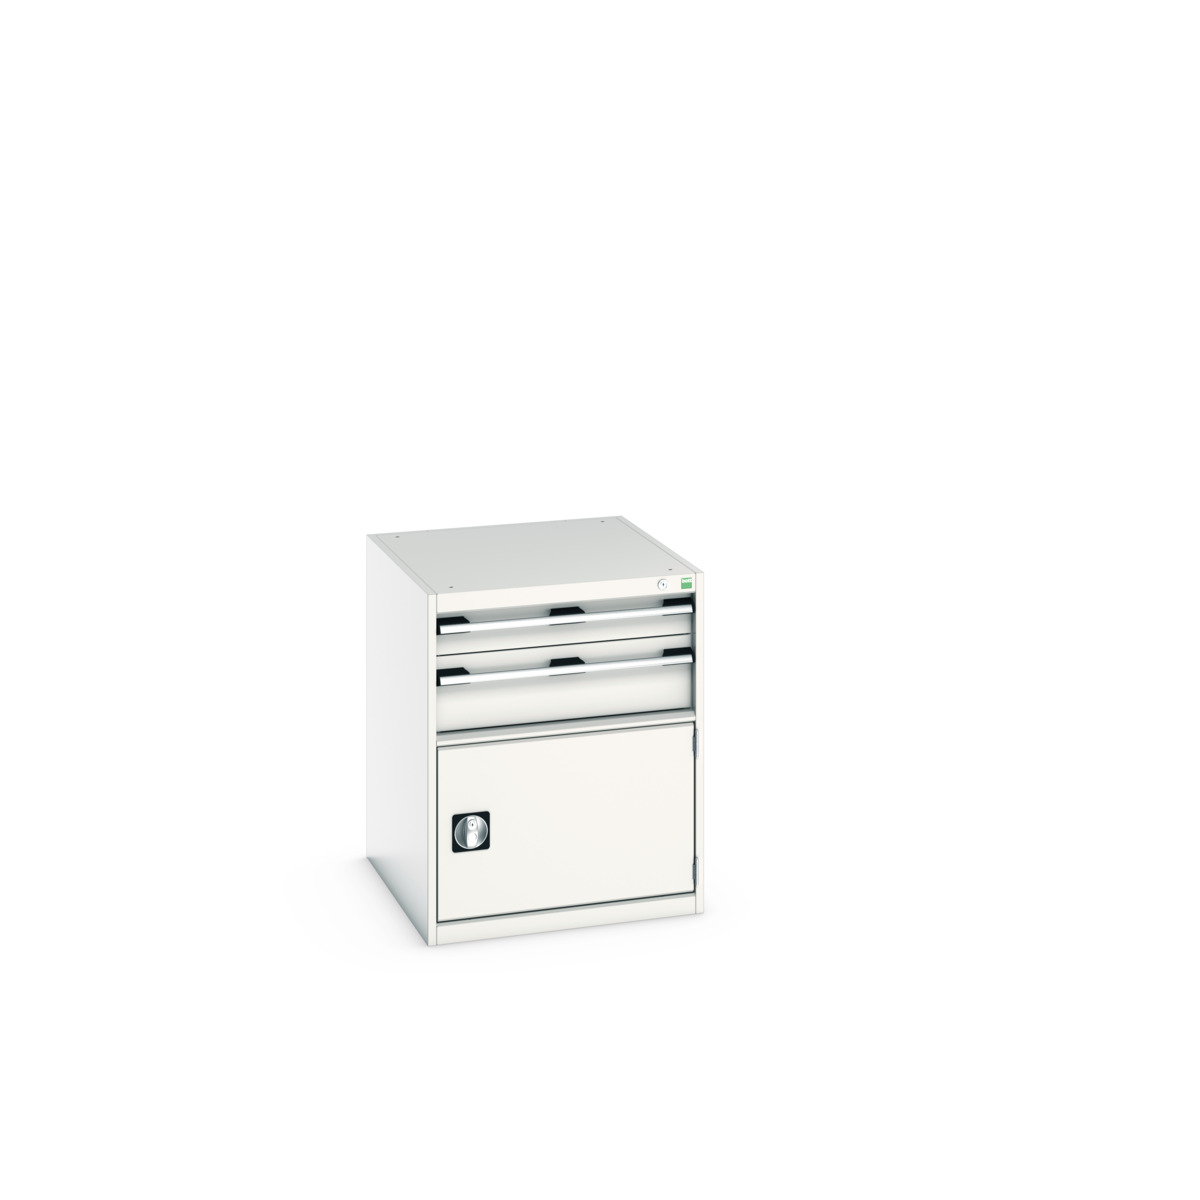 40027011.16V - cubio drawer-door cabinet